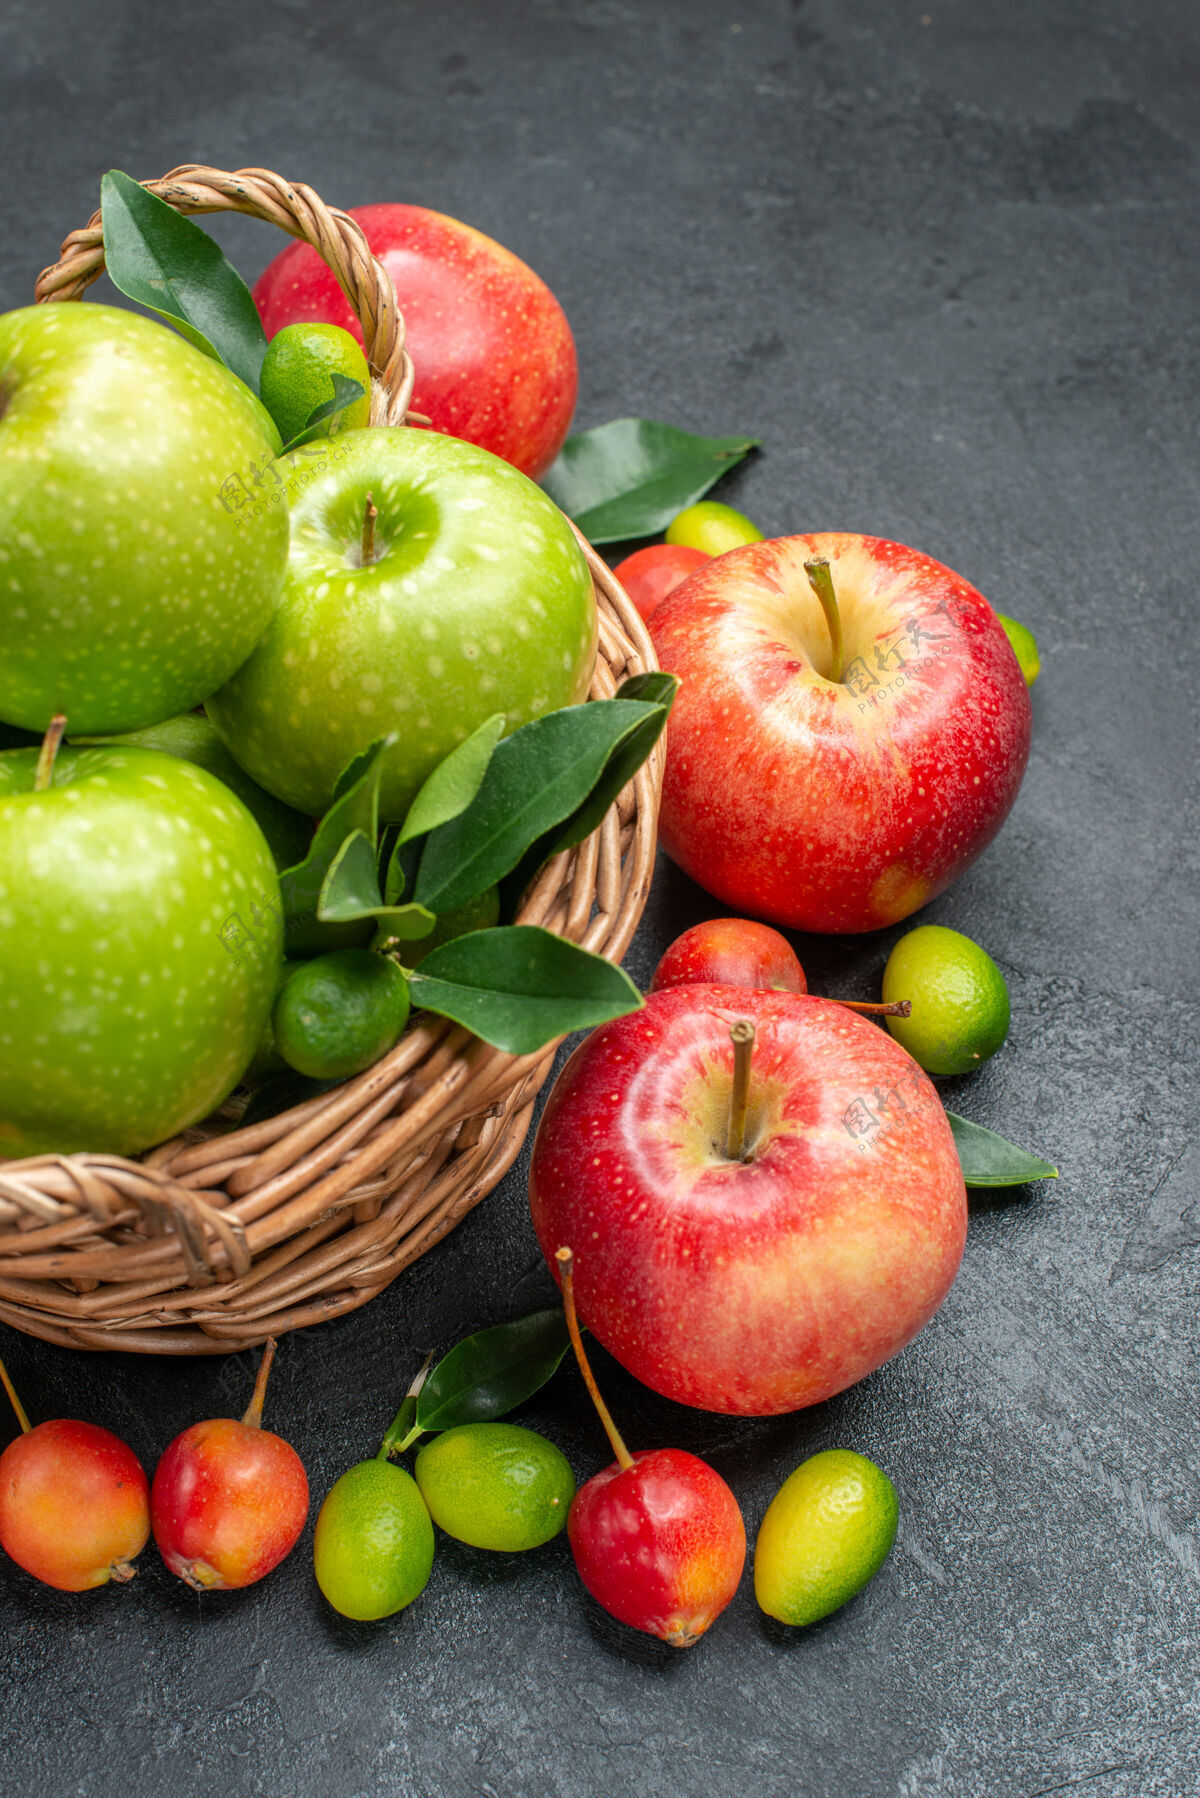 绿色侧视图水果浆果和果篮的绿色苹果与树叶食物柑橘美味